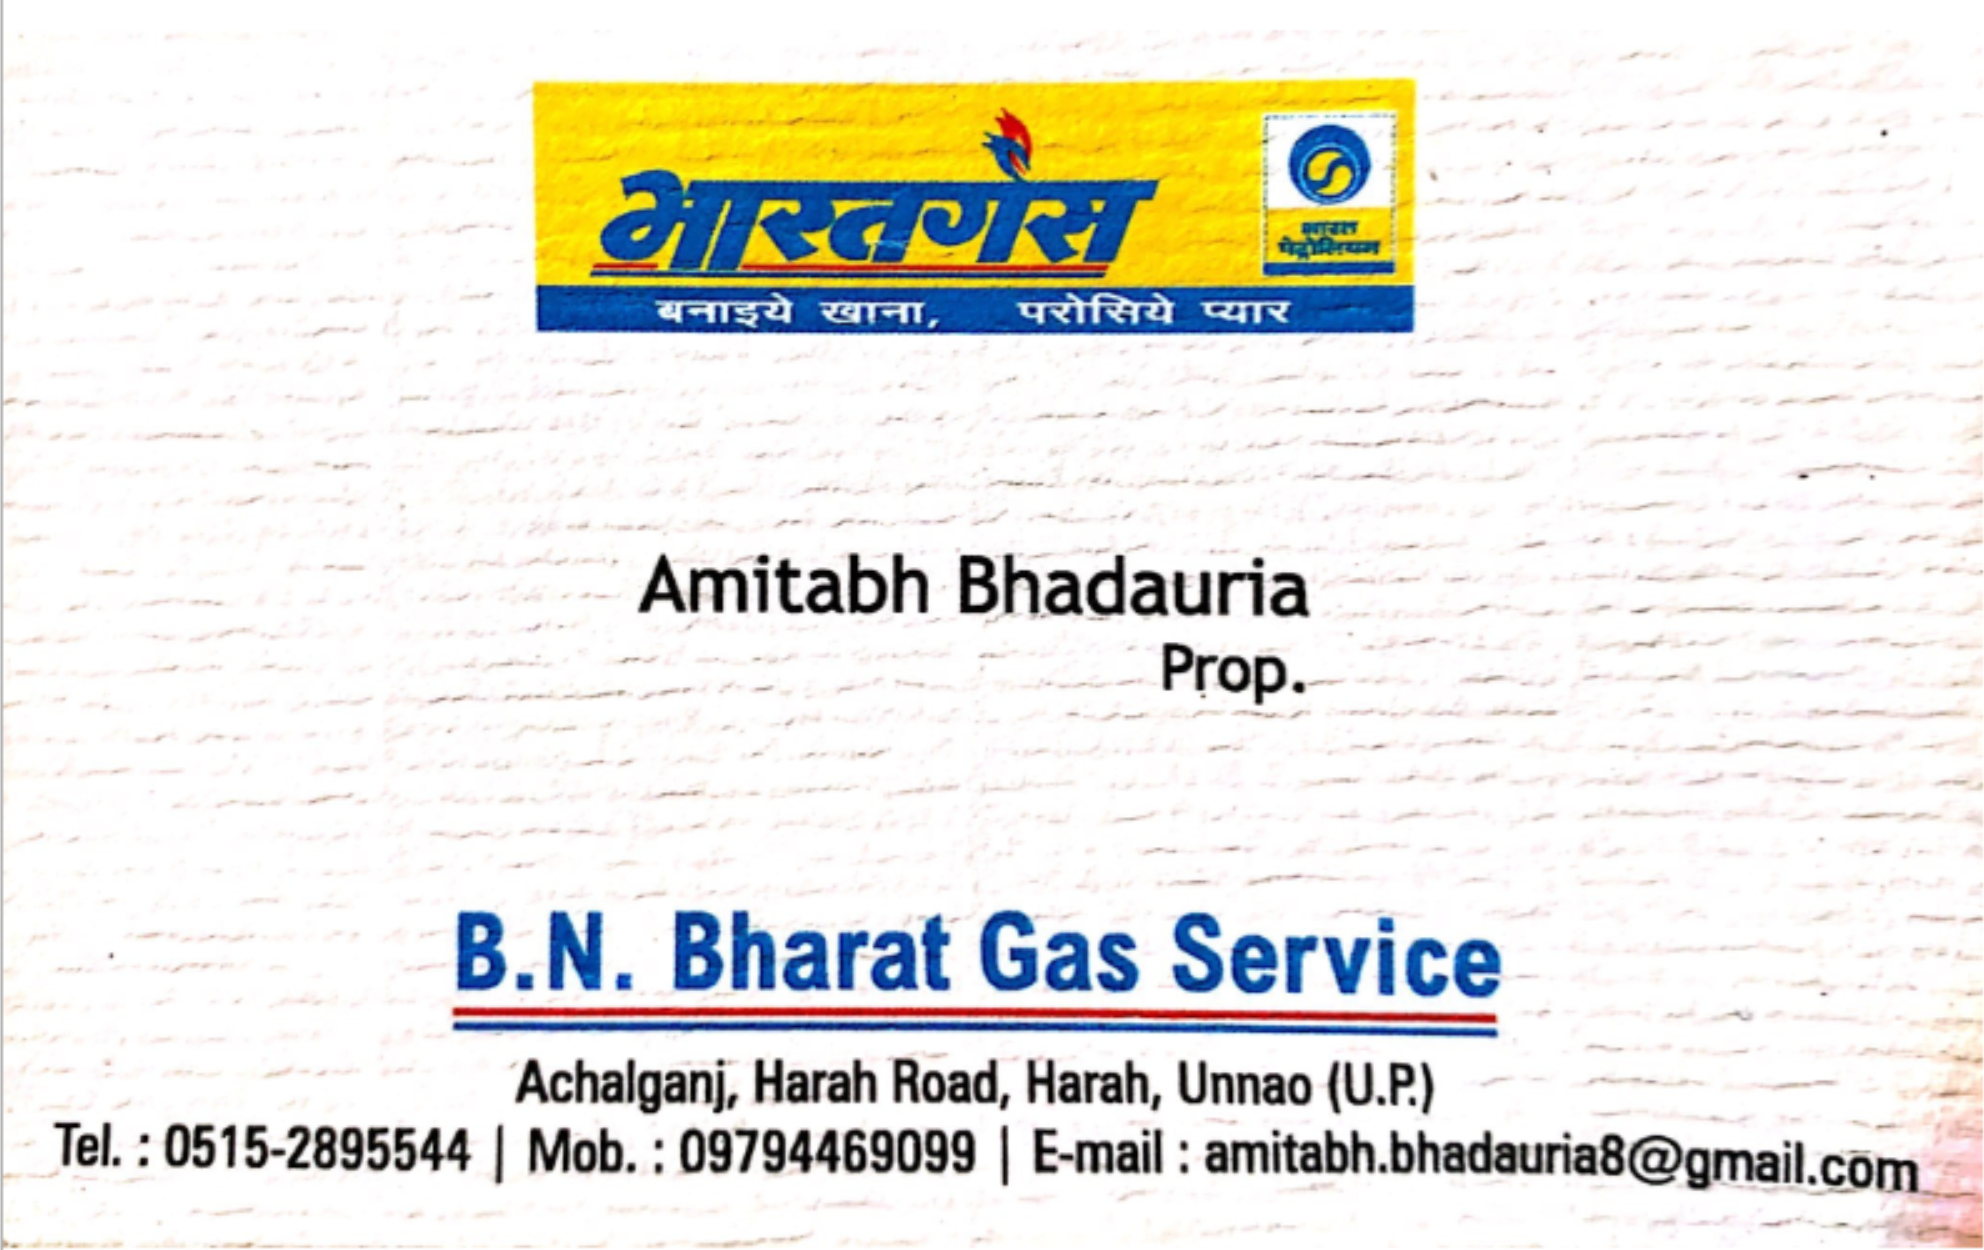 B.N. Bharat Gas Service